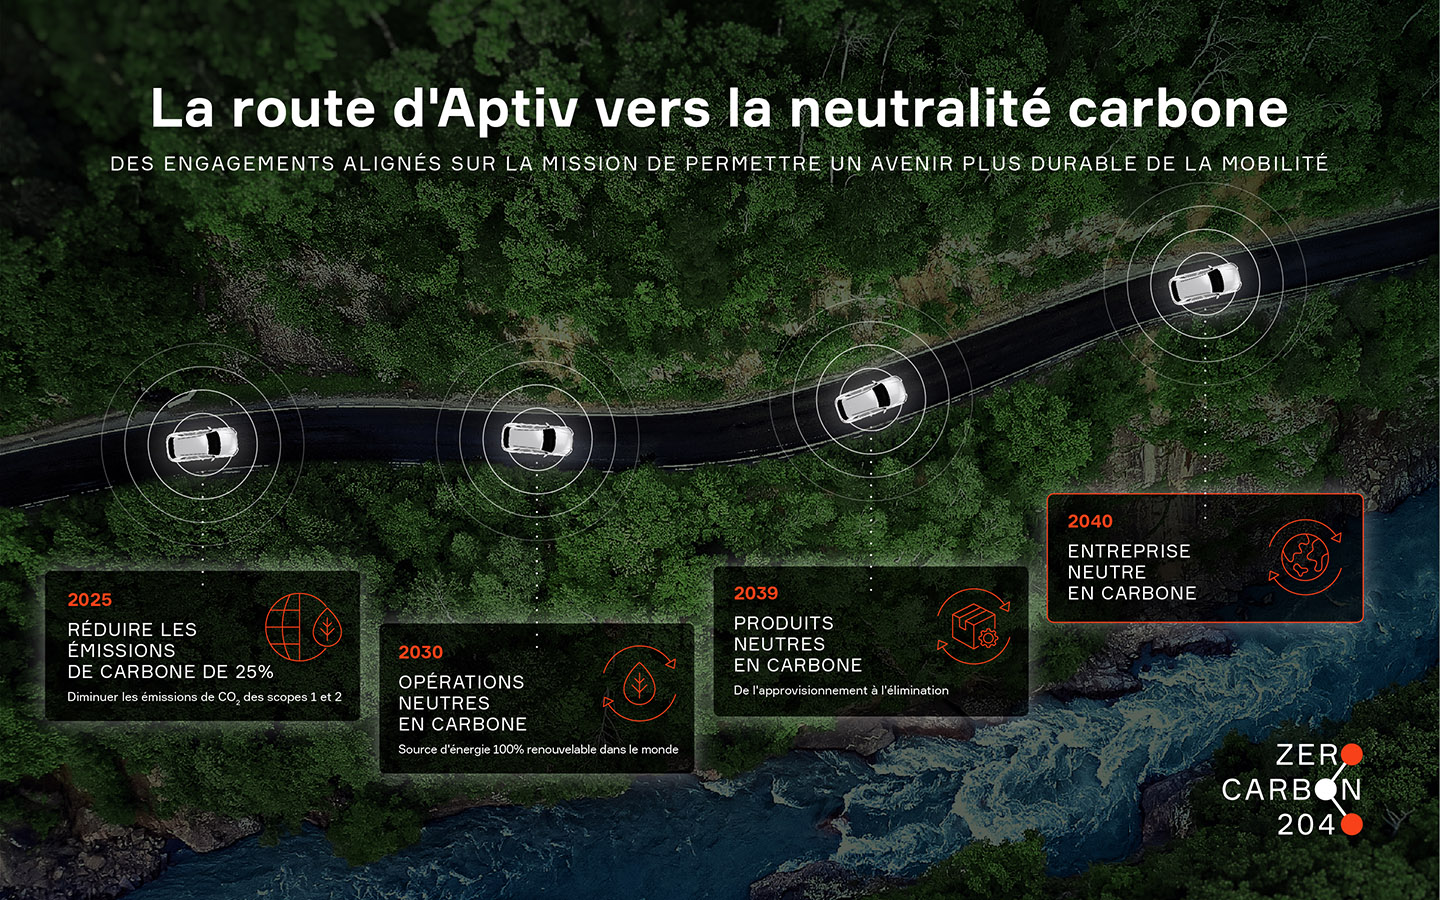 La route d'Aptiv vers la neutralite carbone